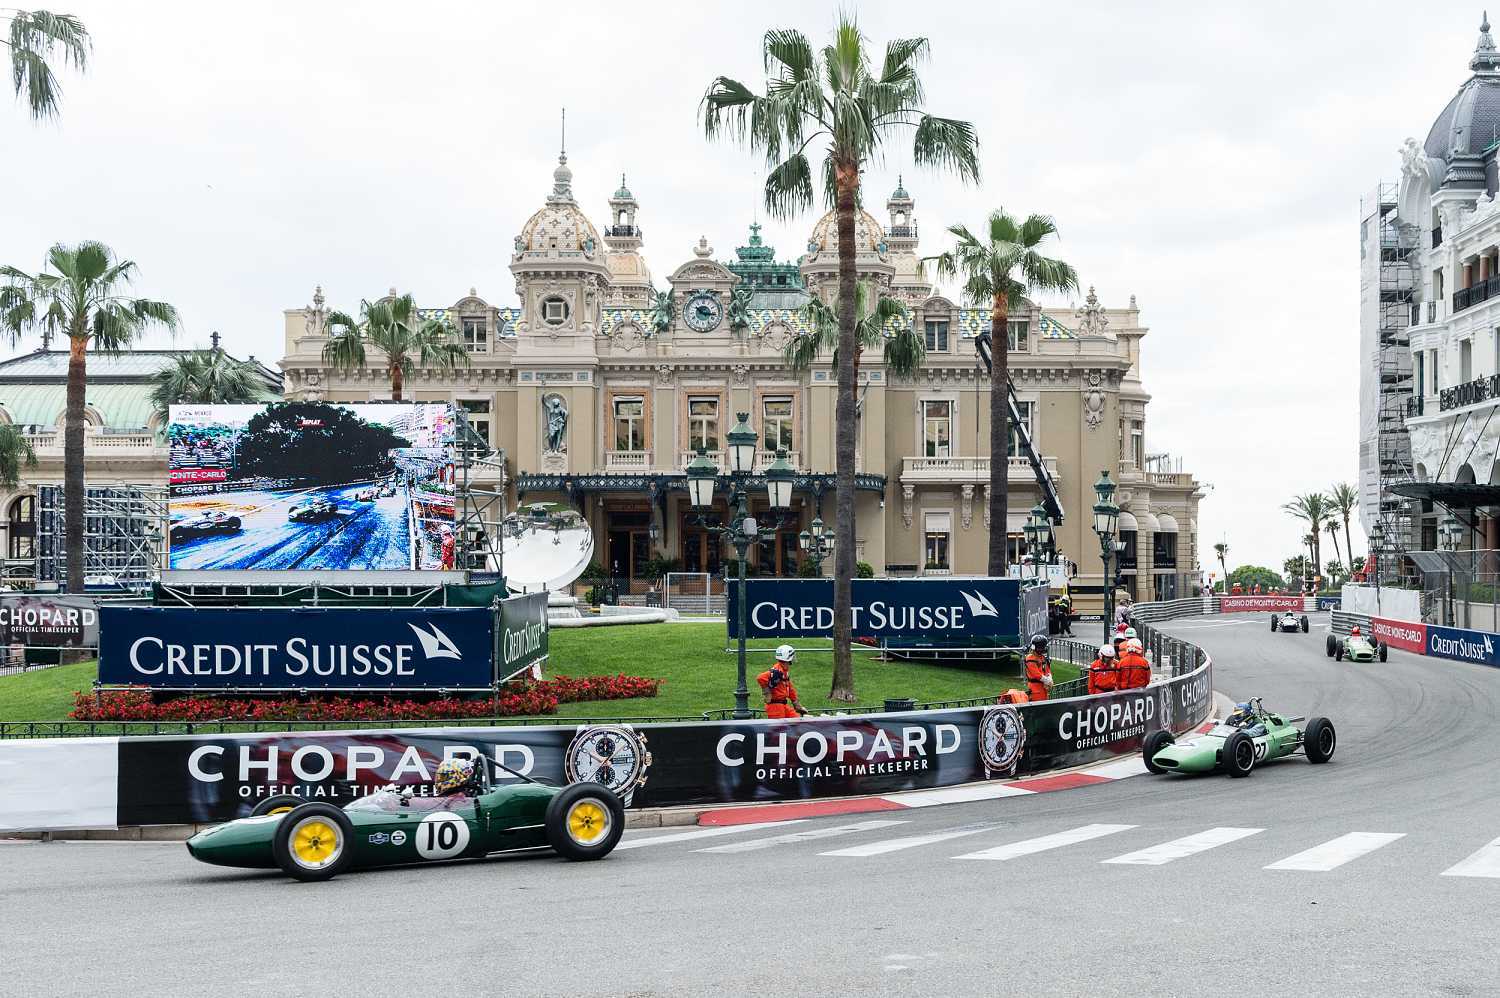 Chopard oficiální časomíra Grand Prix de Monaco 1 | TISSOT T-Race MotoGP Limited Edition 2018 24